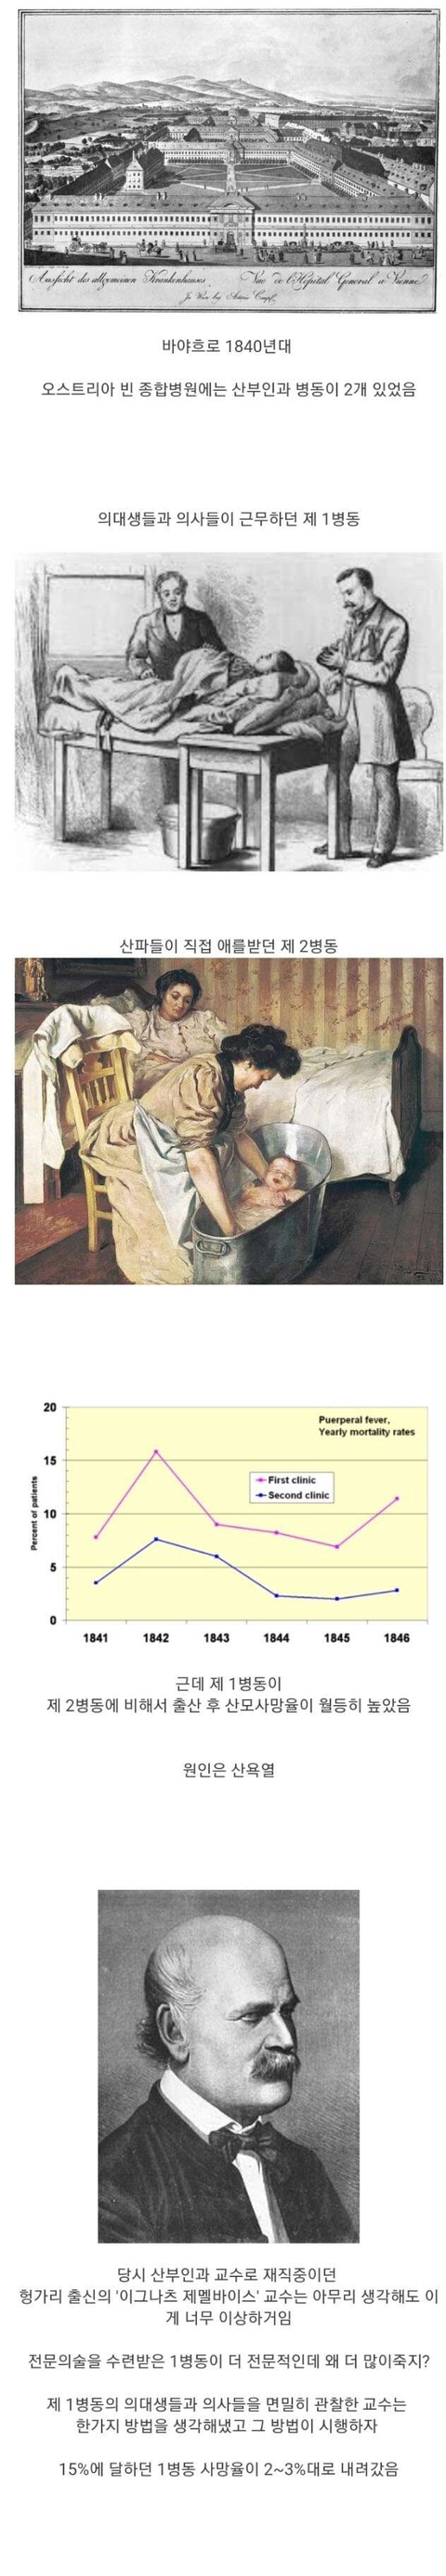 임산부 사망률을 낮춘 교수의 비참한 최후